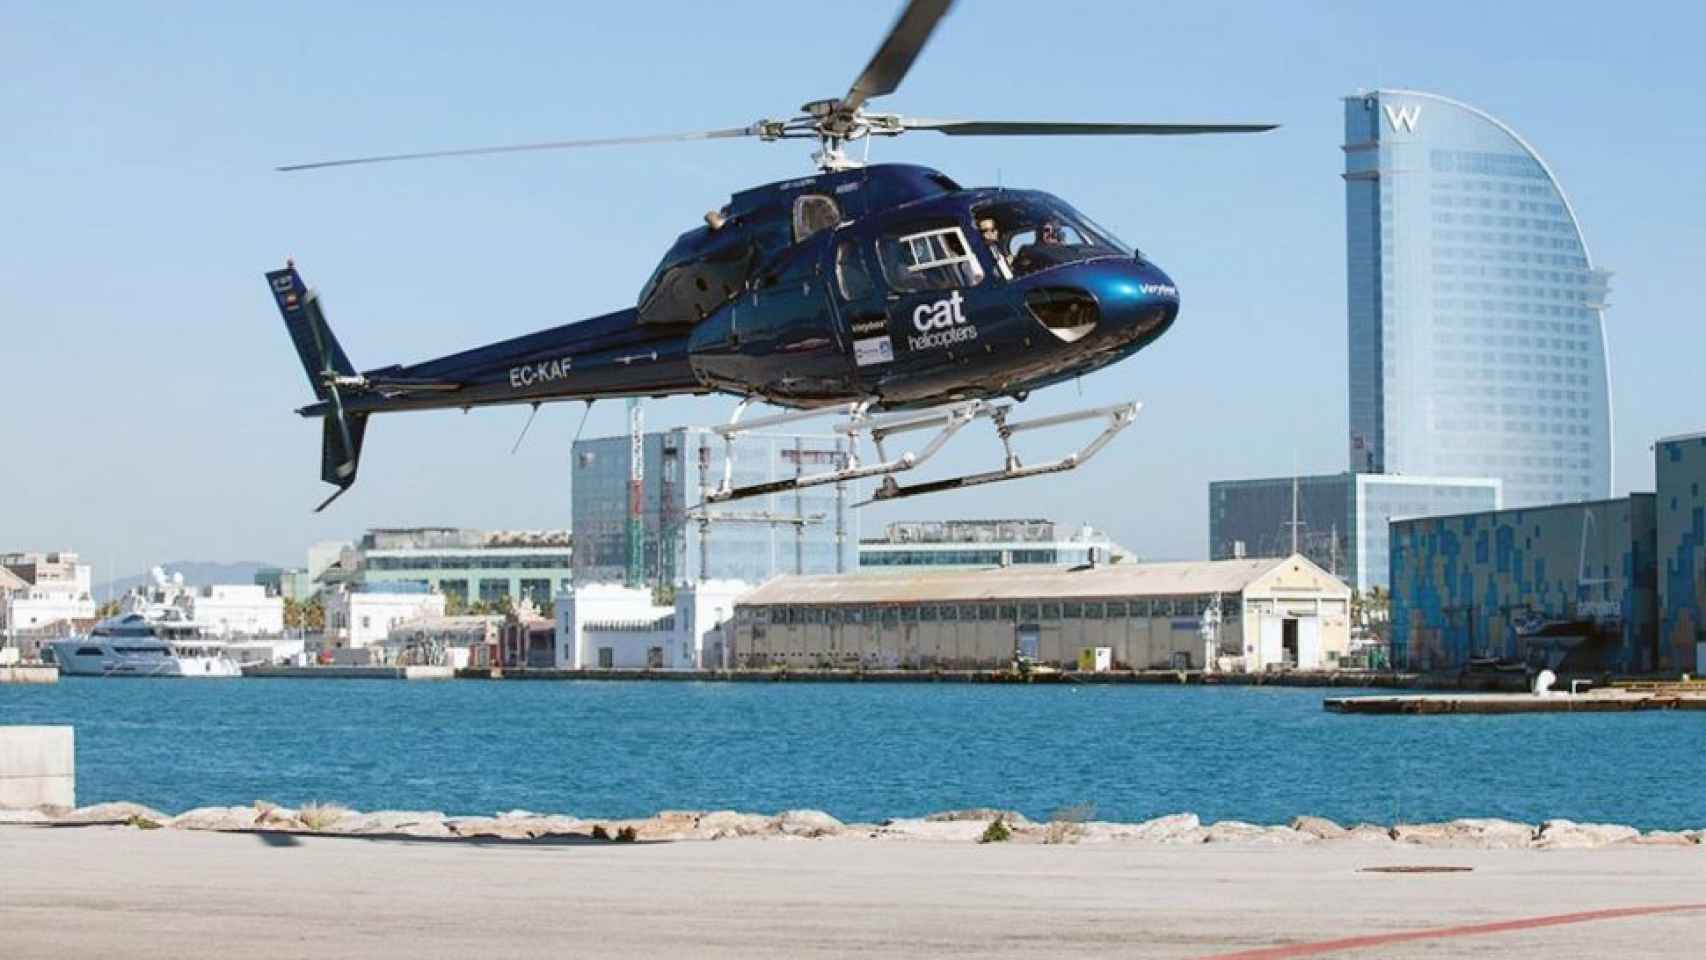 Un helicóptero de Cat Helicòpters aterriza en Barcelona, en una imagen de archivo / CAT HELICÒPTERS